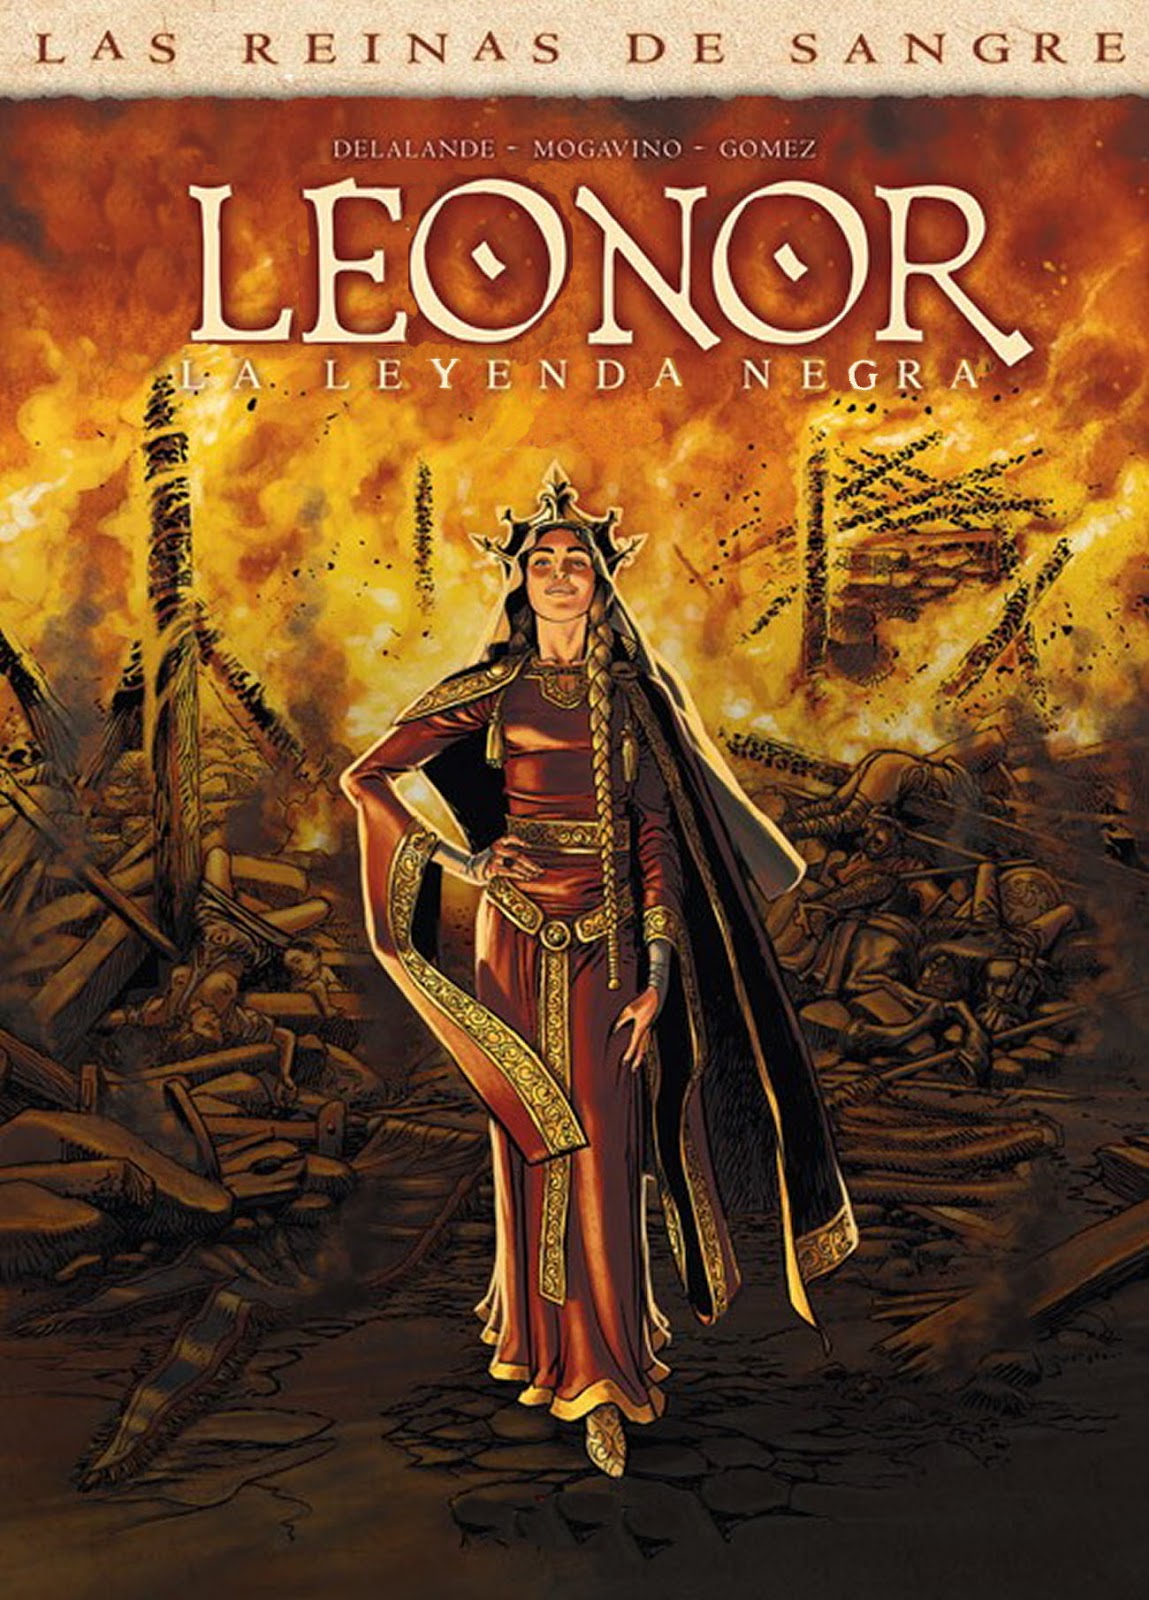 Leonor - La leyenda negra